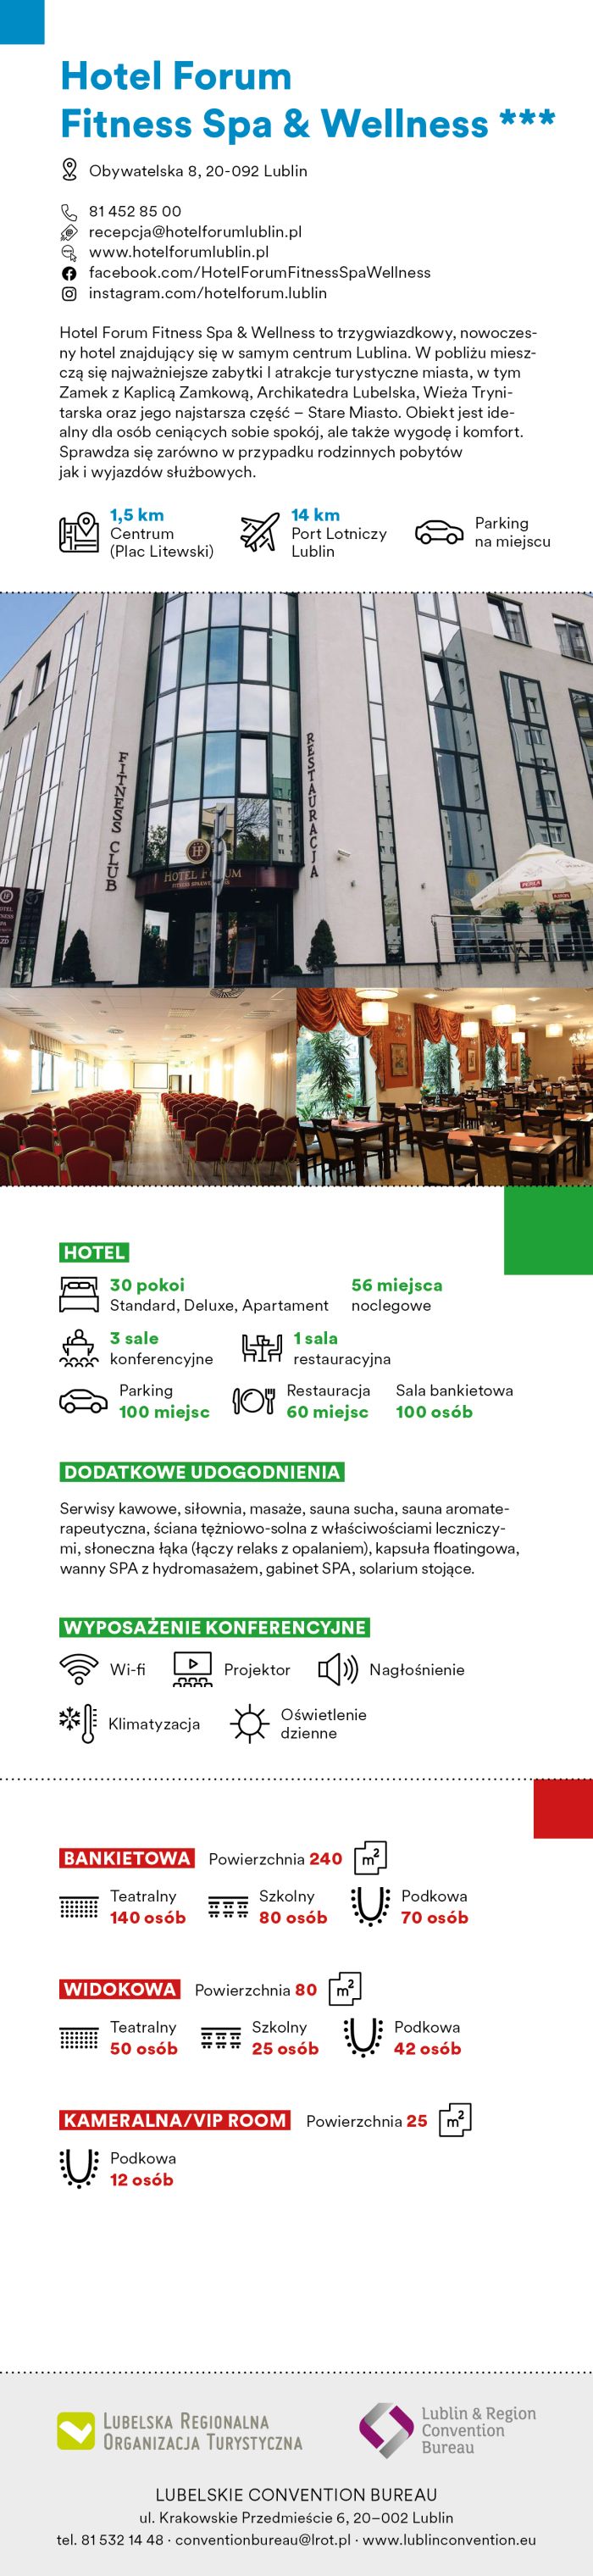 Lublin Convention Bureau Catalogue 16 preview